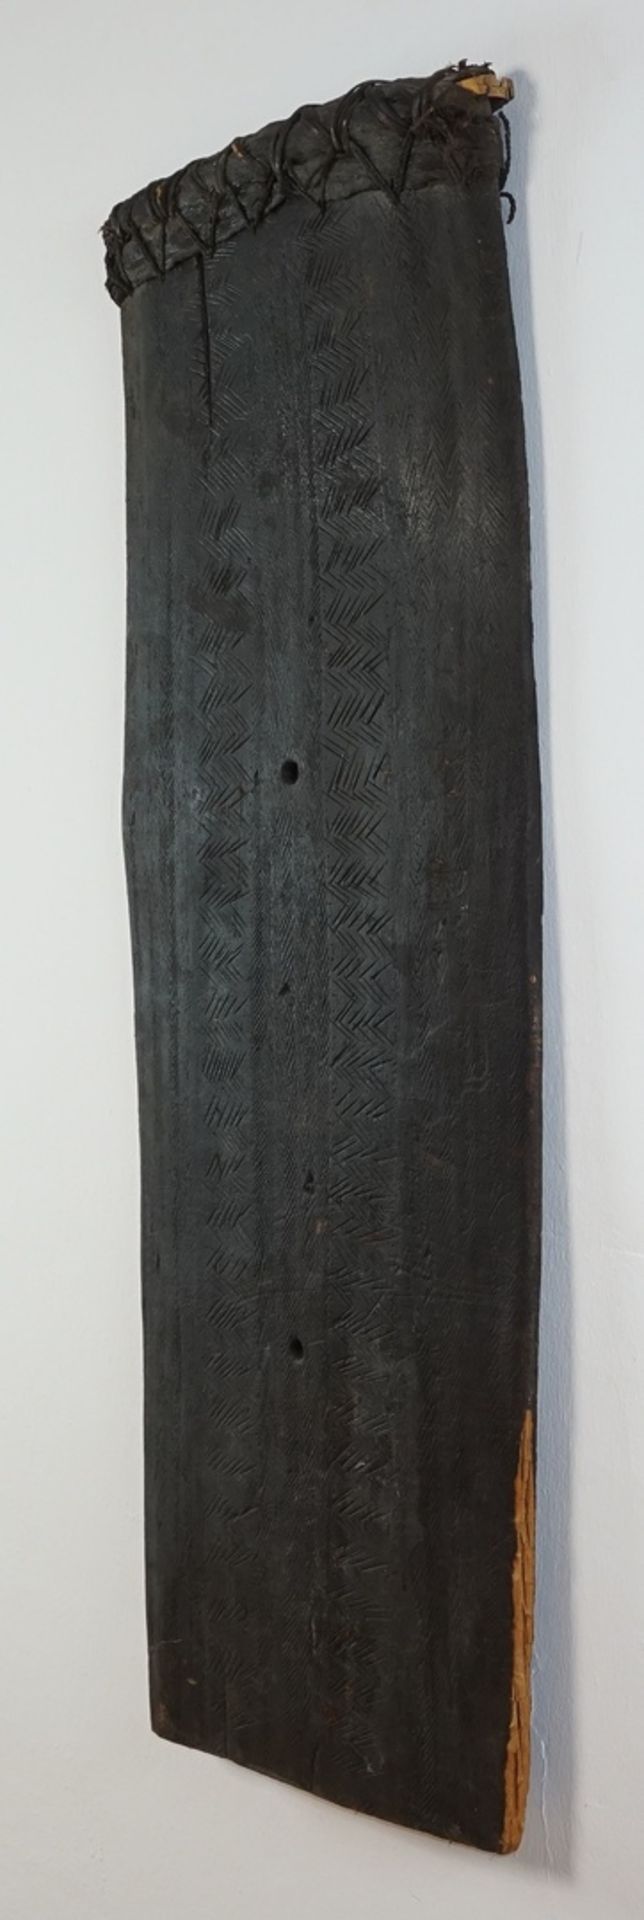 Kampfschild, Papua-Neuguinea, 1. Hälfte 20. Jh.Holz, starke Krustenpatina, Rand mit Blättern - Image 2 of 4